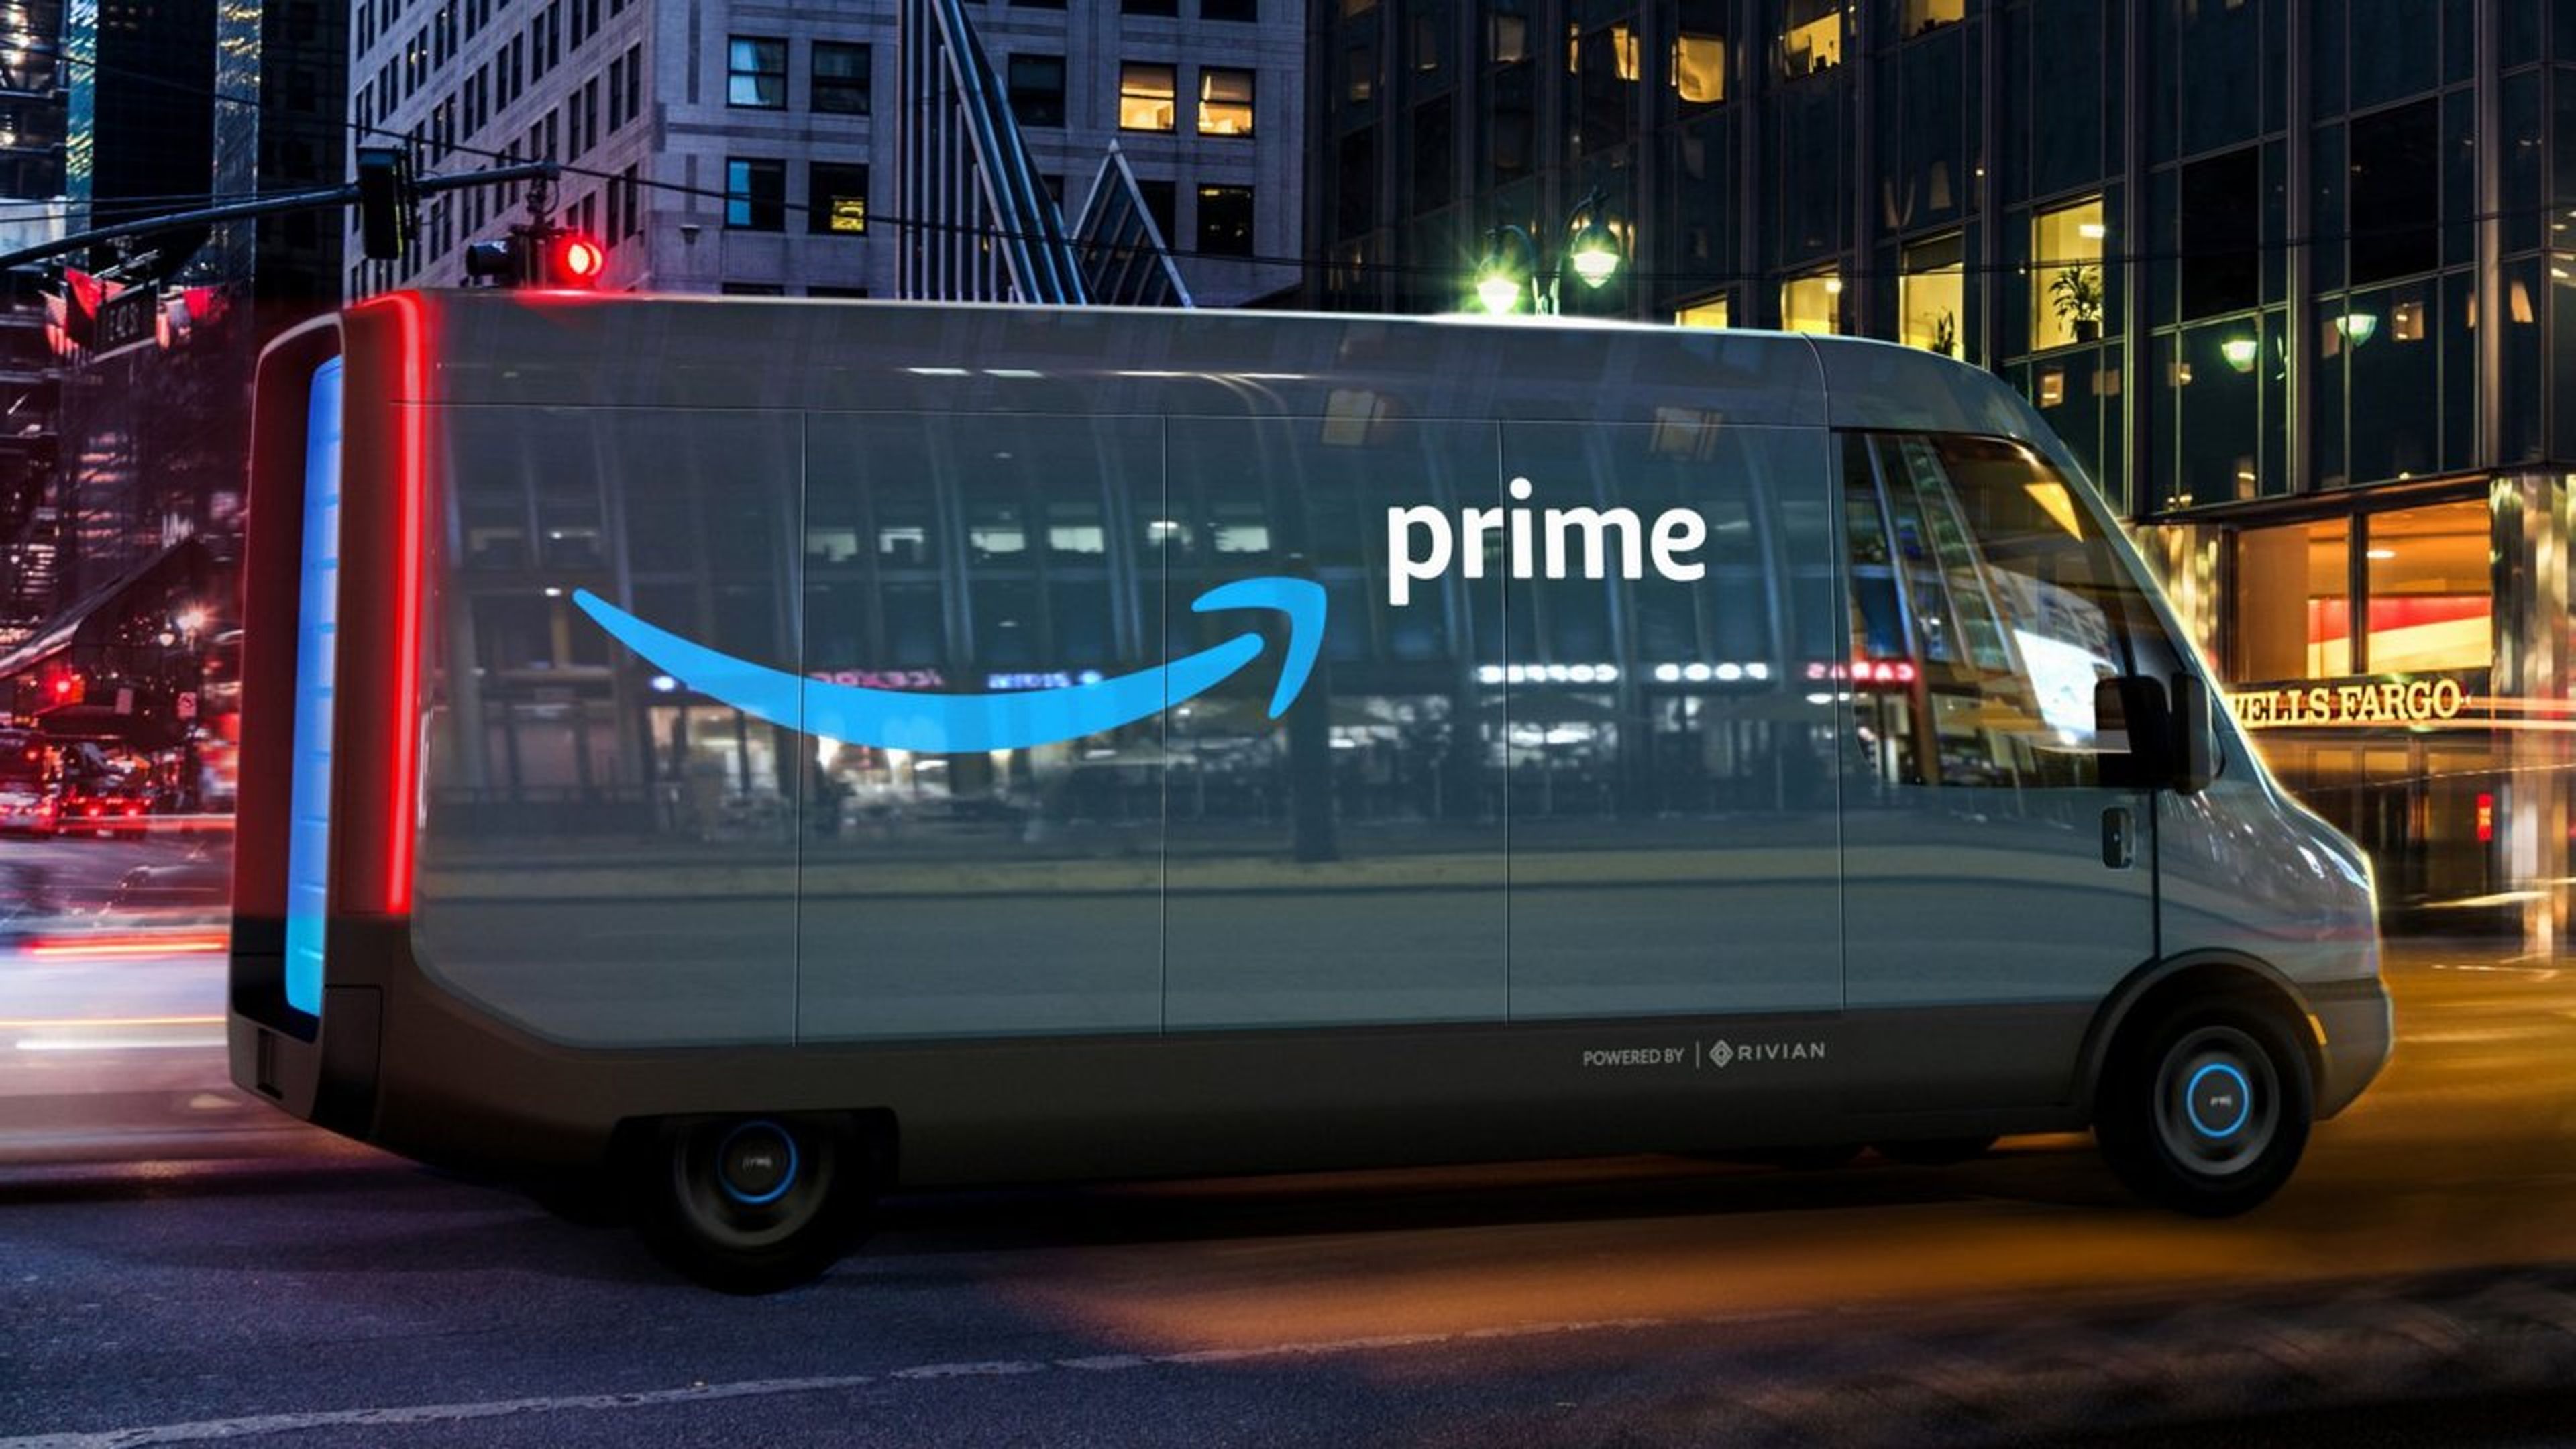 Las furgonetas de Rivian para Amazon serán diseñadas en exclusiva